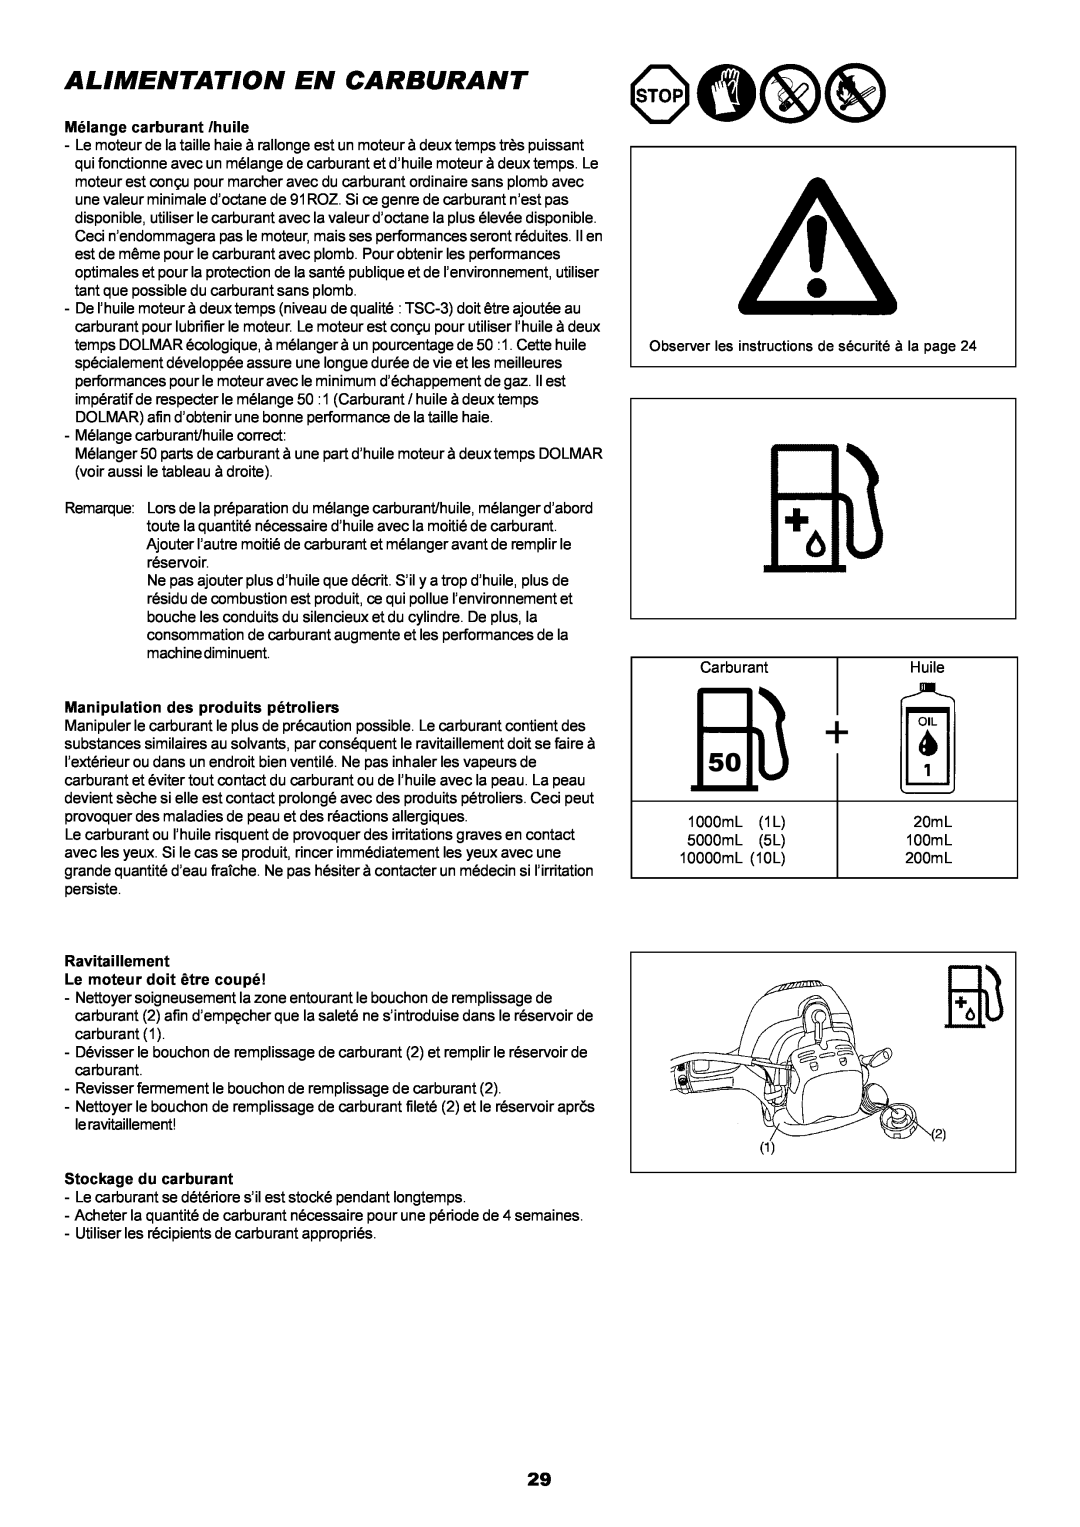 Dolmar MH-2556 instruction manual Alimentation En Carburant 